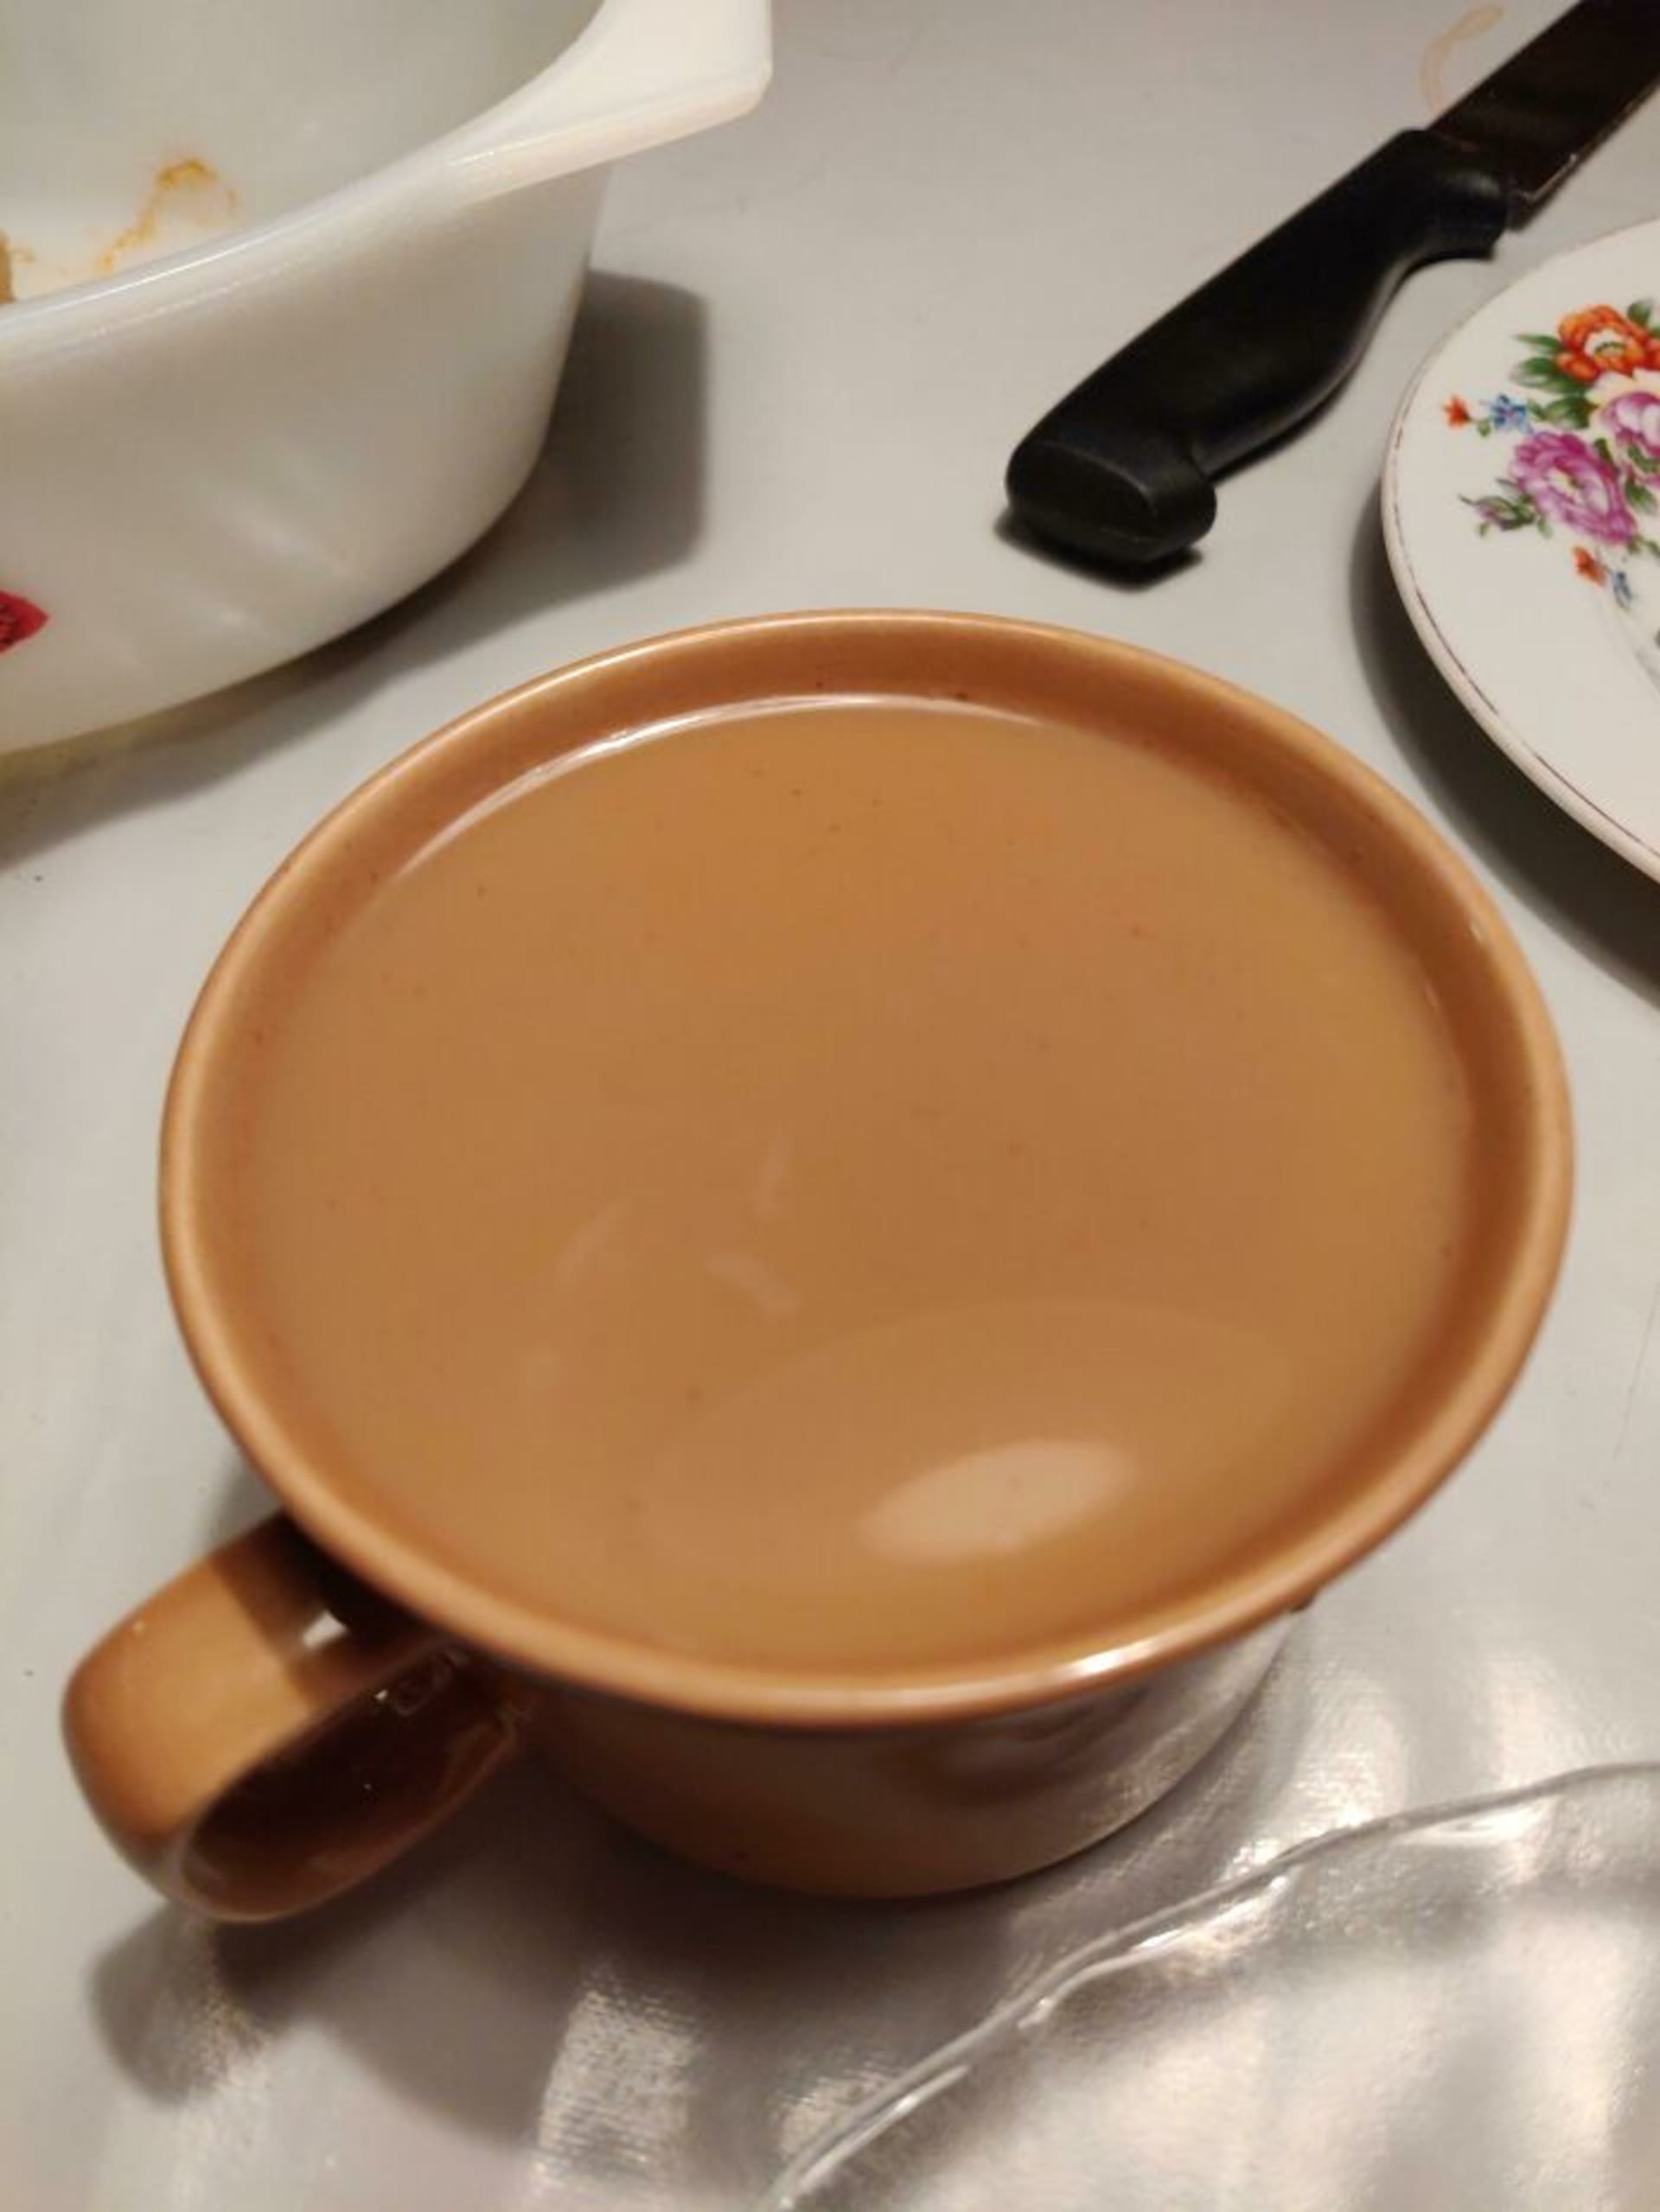 Káva s mlékem má stejnou barvu jako hrnek